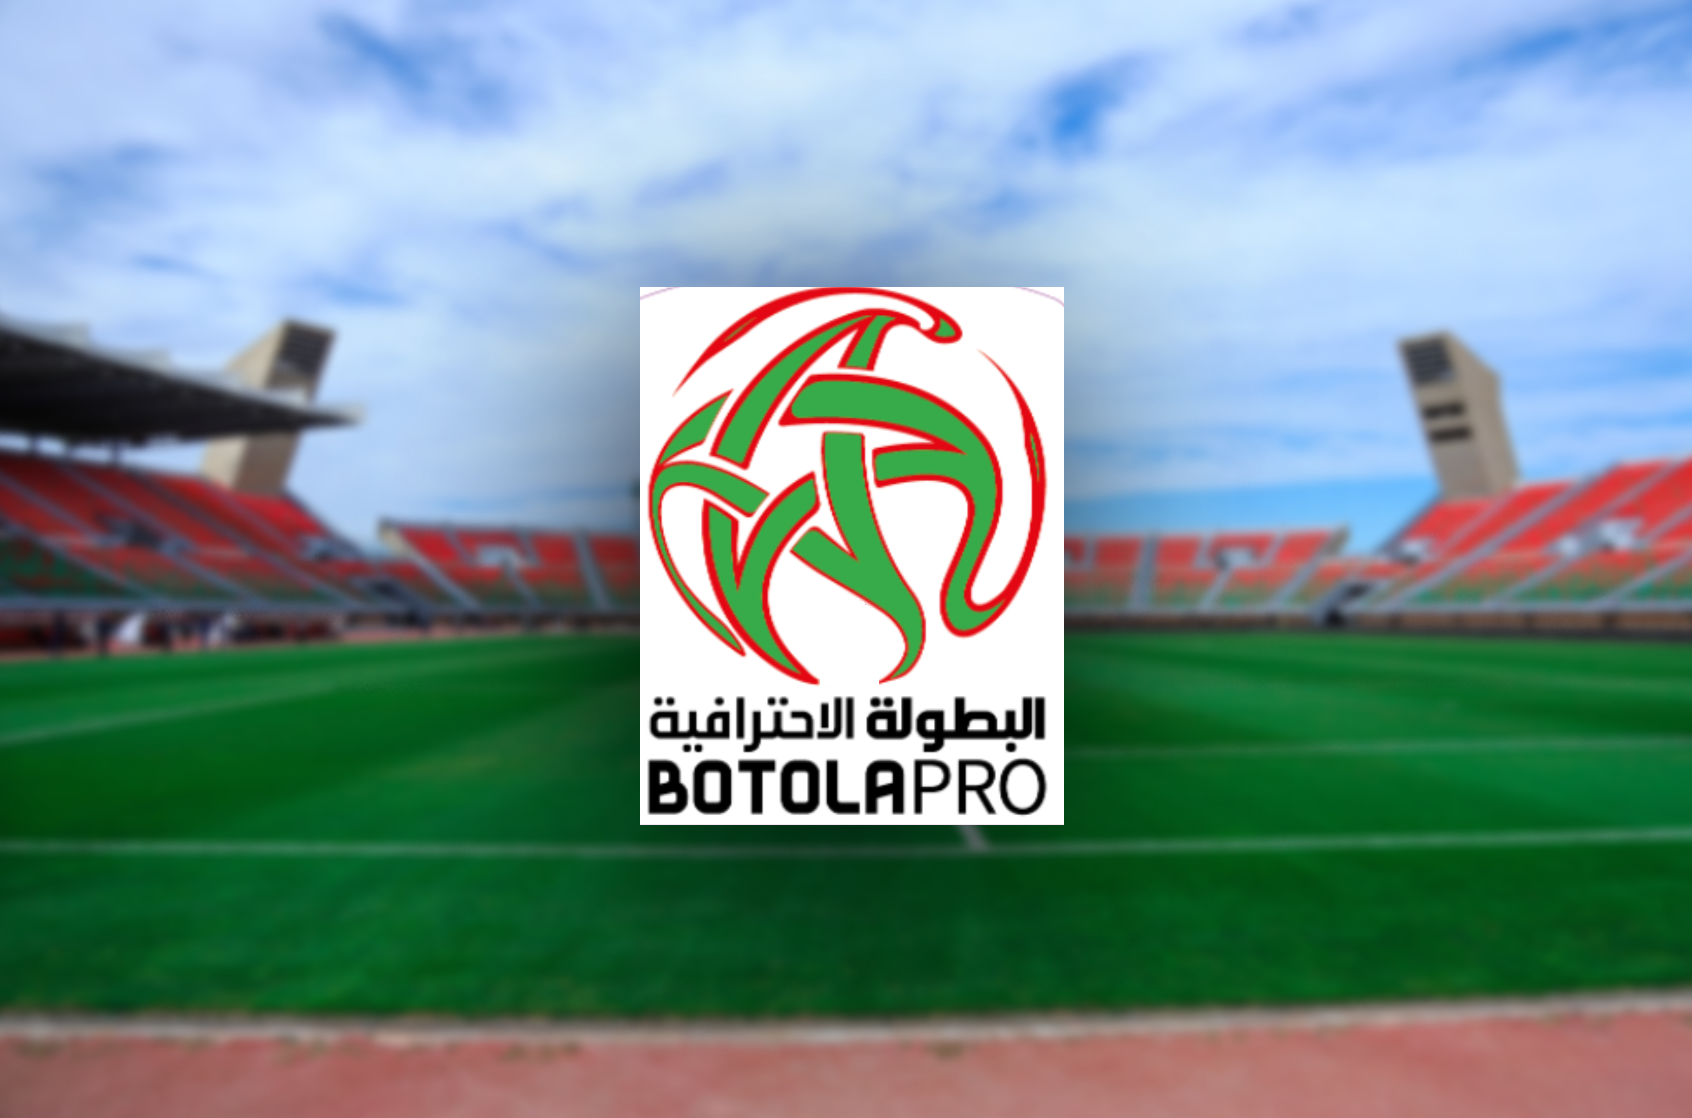 Botola Pro Inwi 1 : Le Mouloudia d’Oujda et le Youssoufia de Berrechid se neutralisent 1-1

